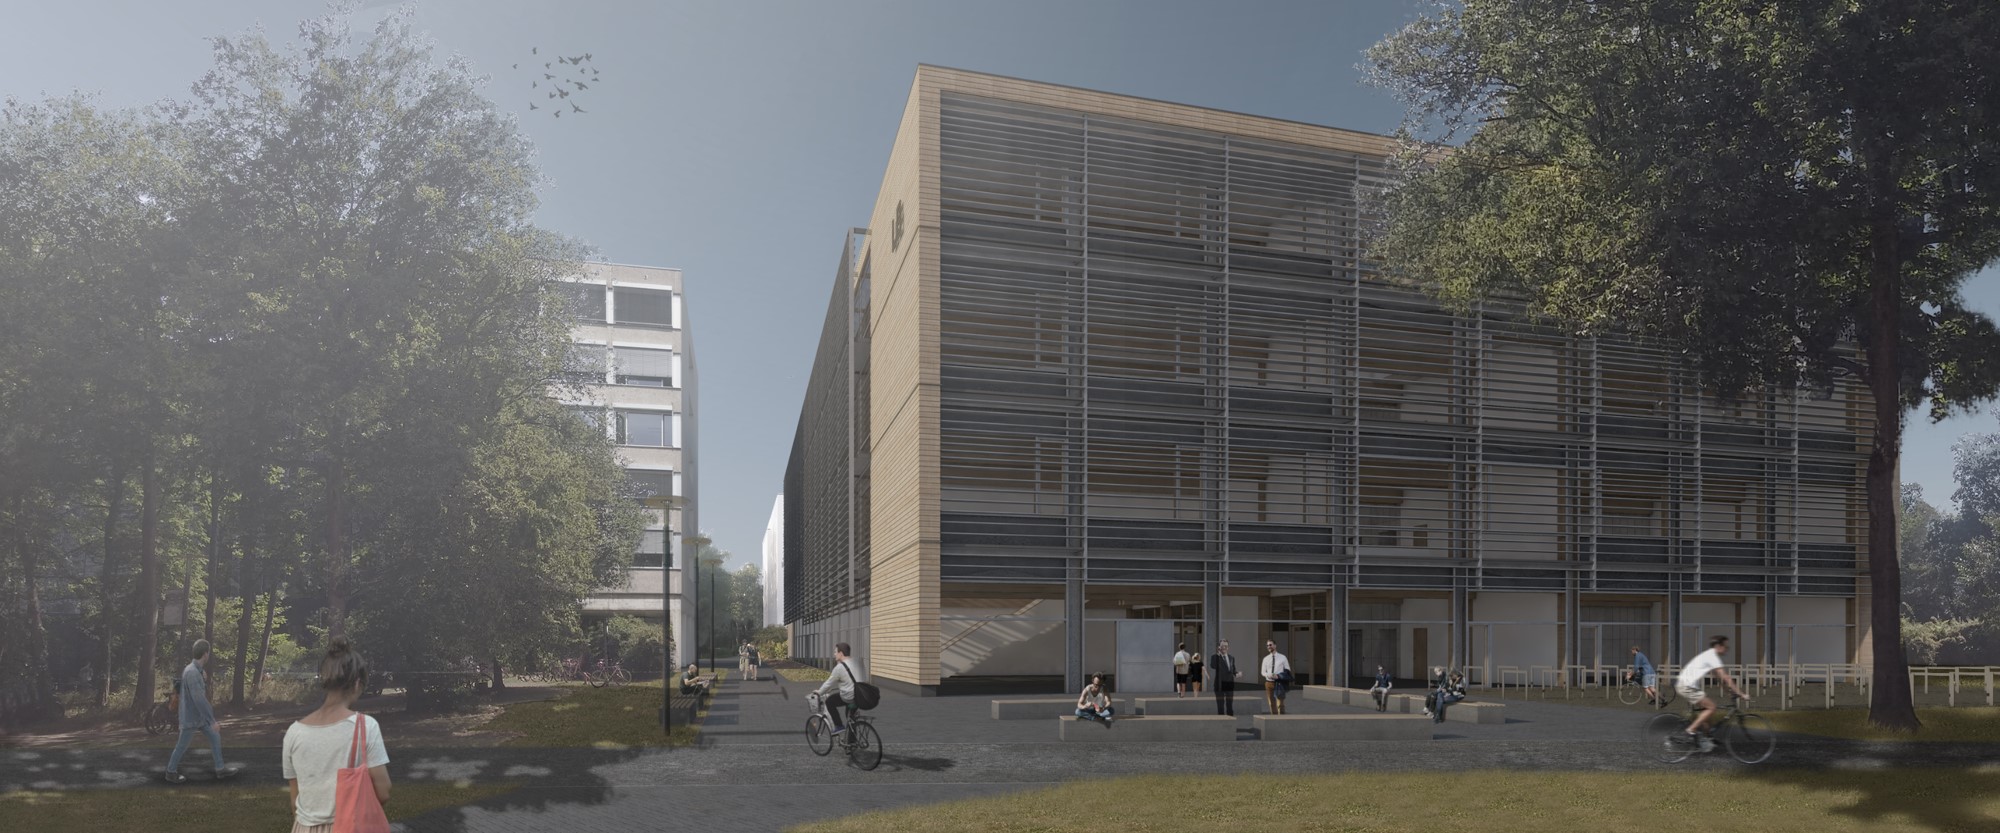 Der studentische Entwurf zeigt, wie das Gebäude LB auf dem Campus neu entwickelt werden könnte.  